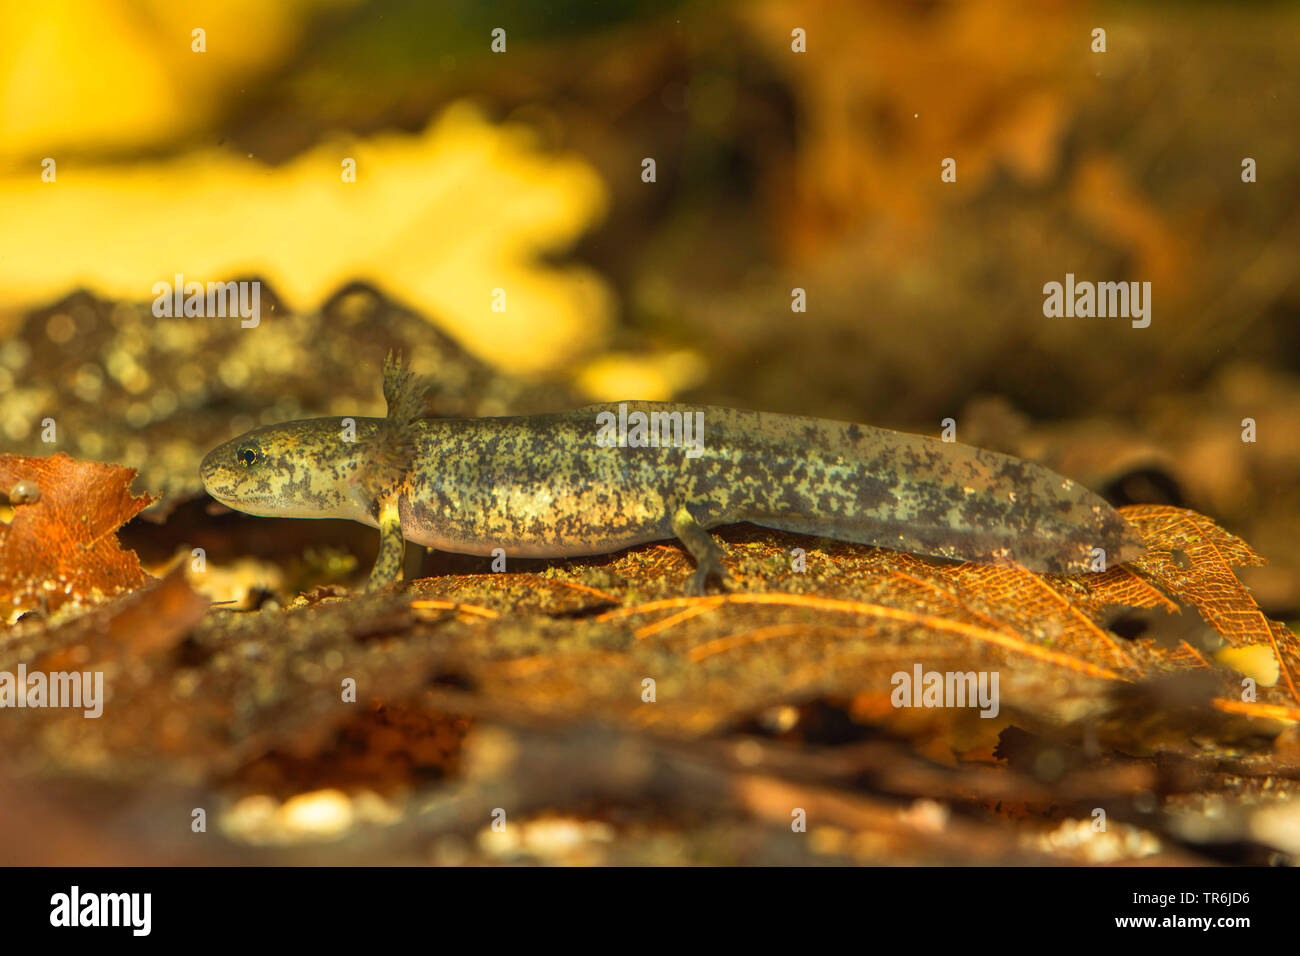 European fire salamander (Salamandra salamandra), larva just before end of metamorphosis, Germany Stock Photo